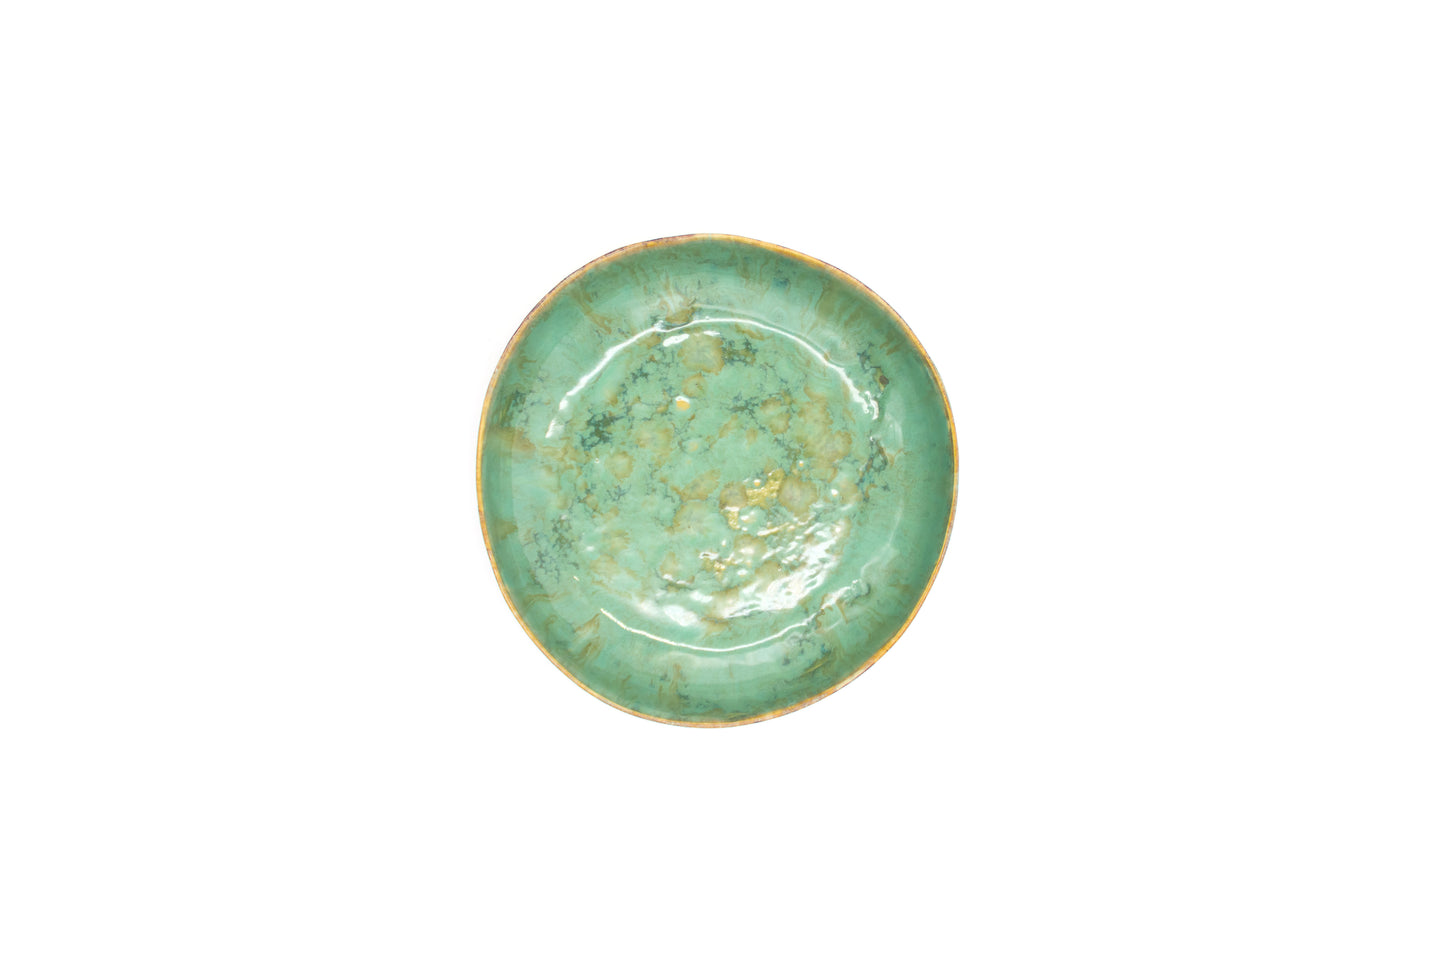 Miska ceramiczna duża w kolorze beżowo-zielonym